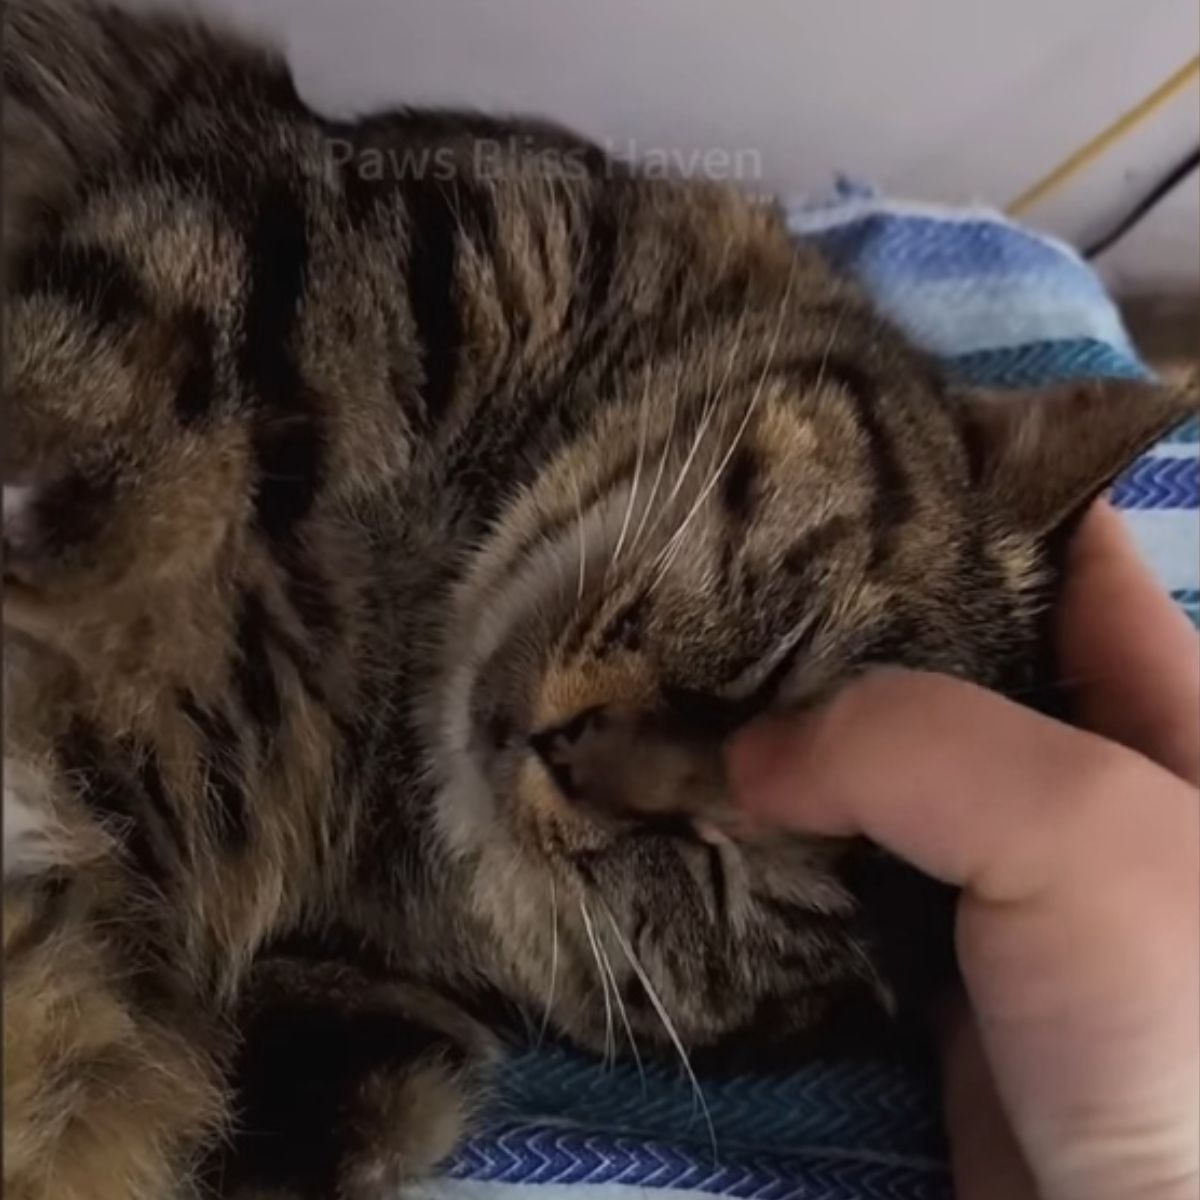 human touching cat's head